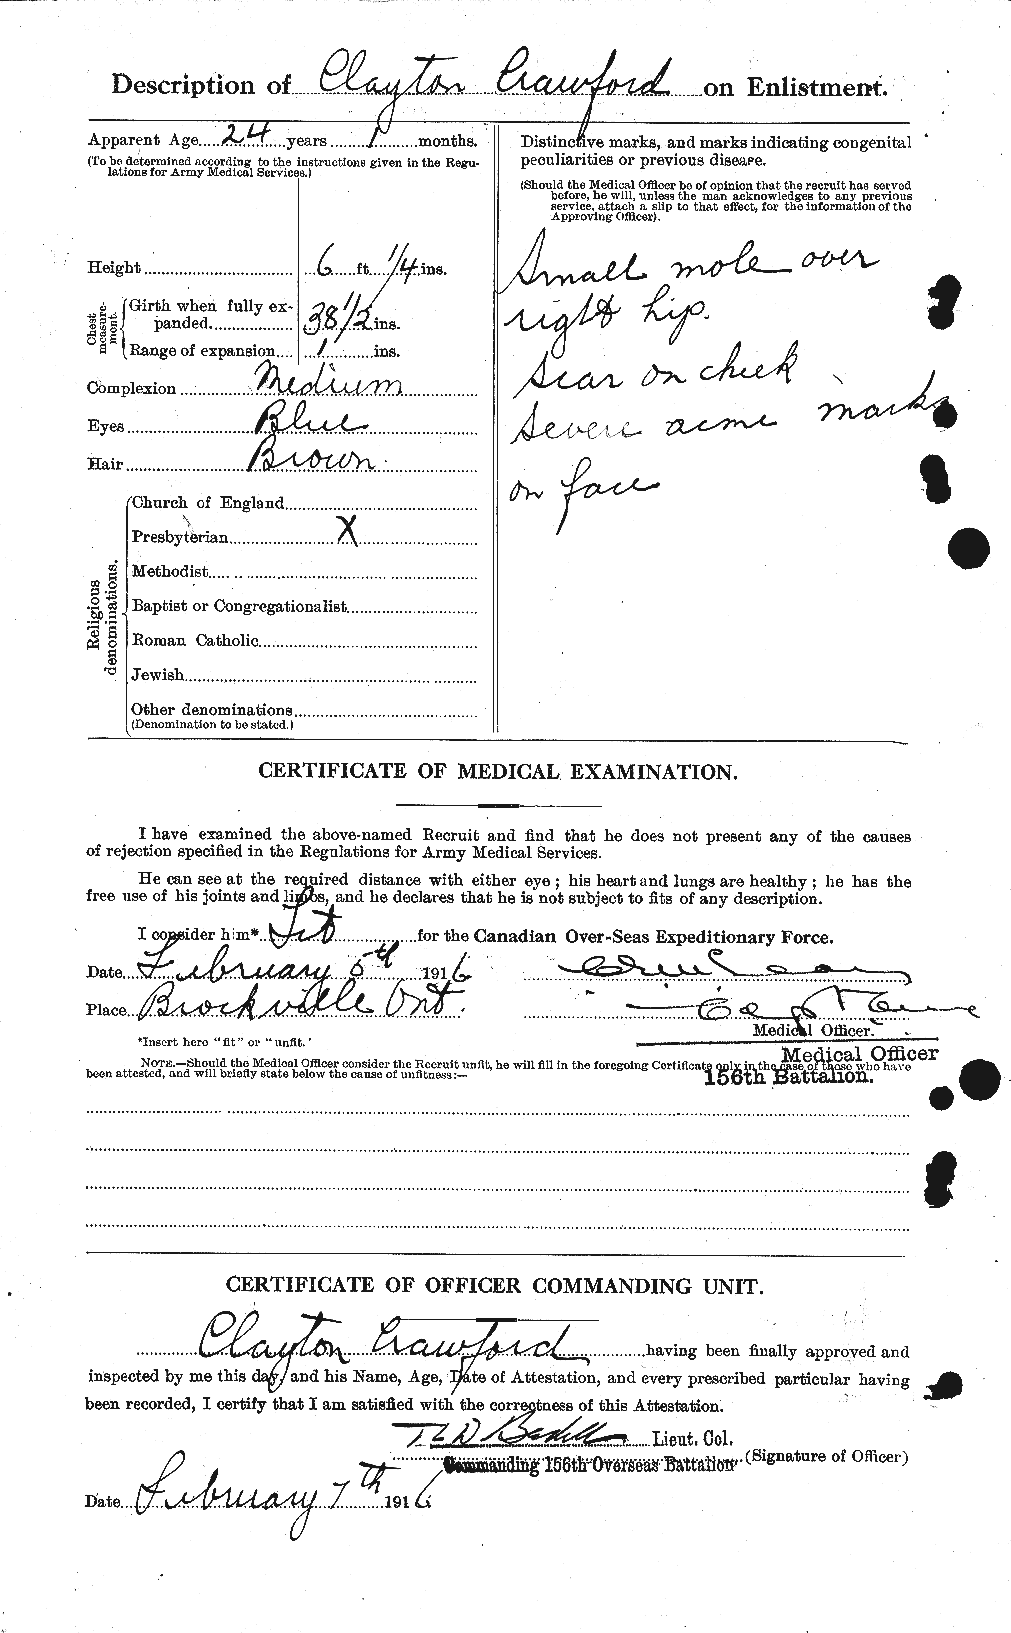 Dossiers du Personnel de la Première Guerre mondiale - CEC 060831b